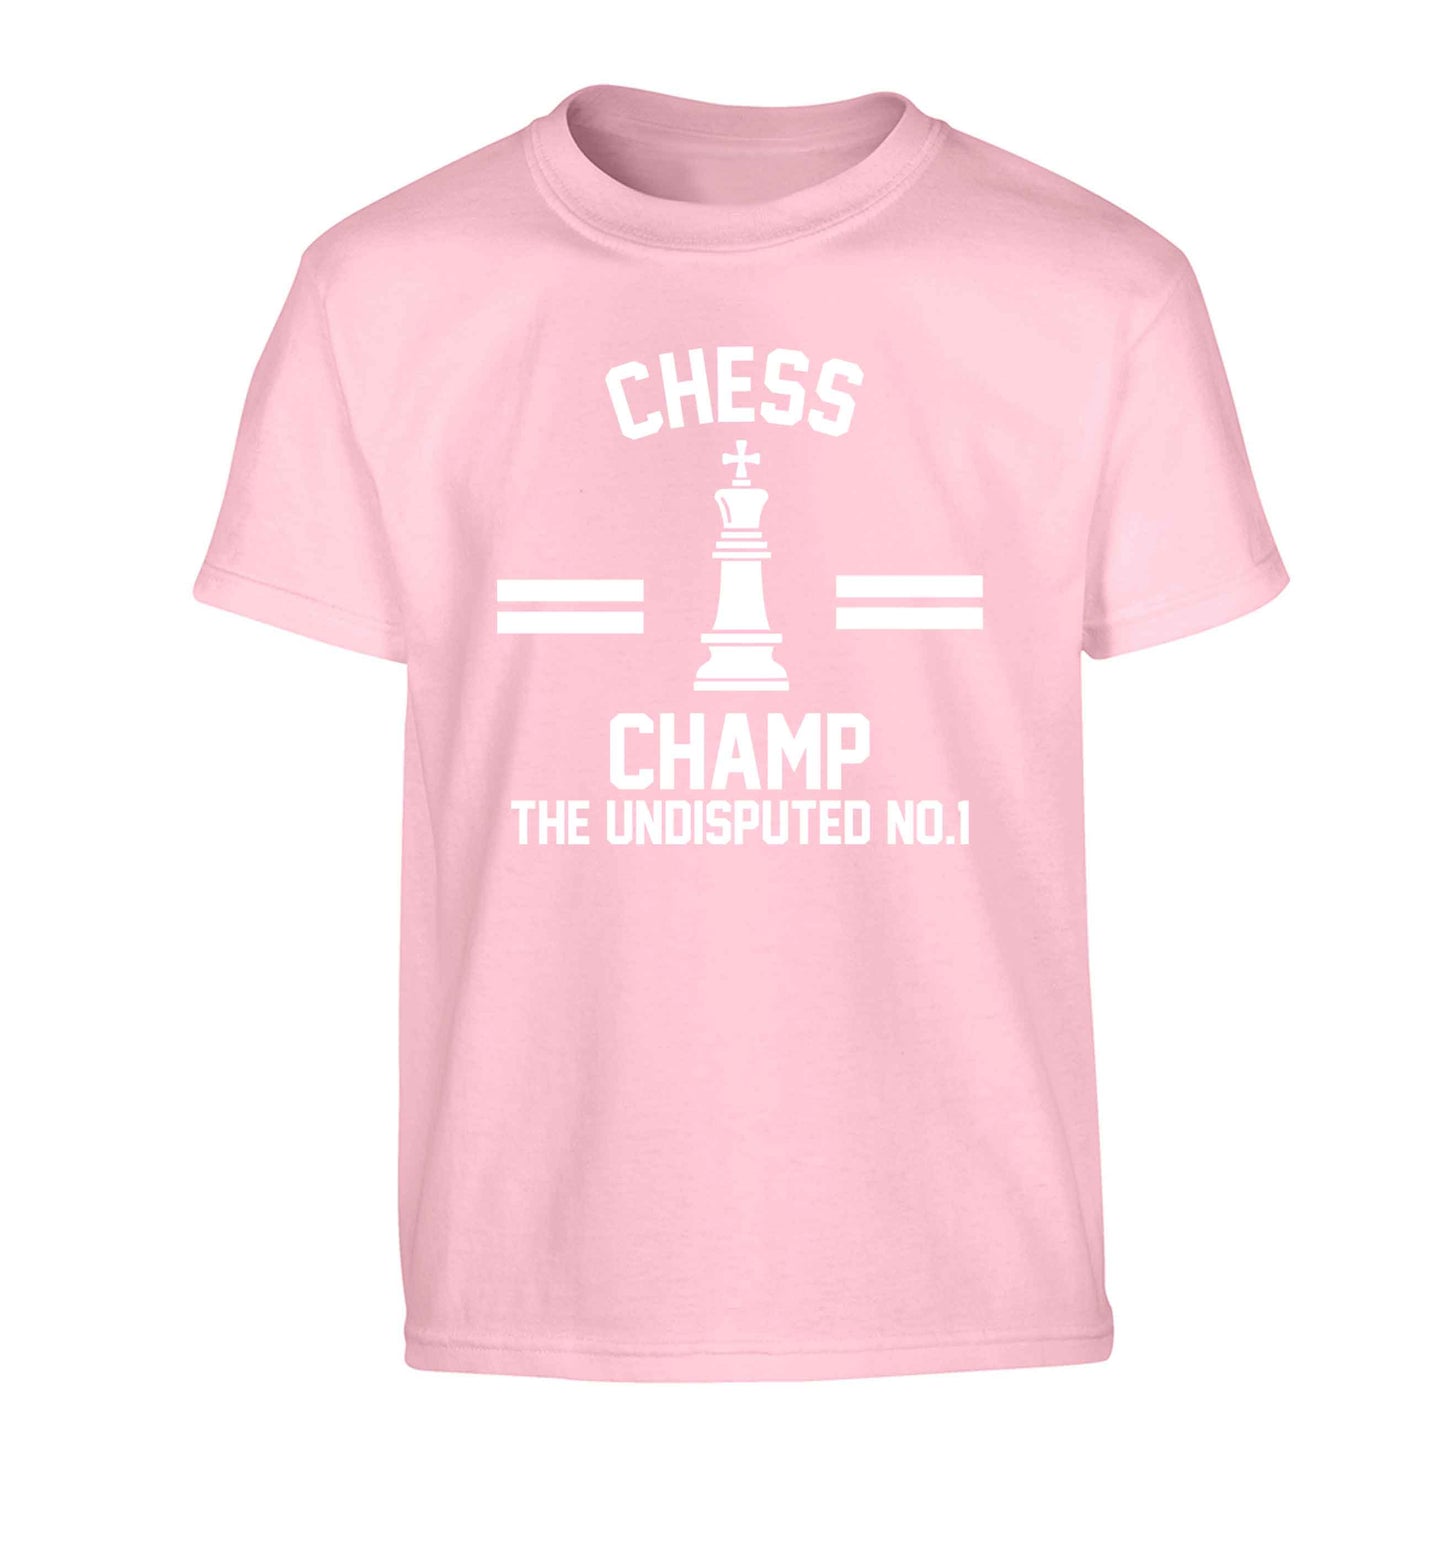 Undisputed chess championship no.1  Children's light pink Tshirt 12-13 Years